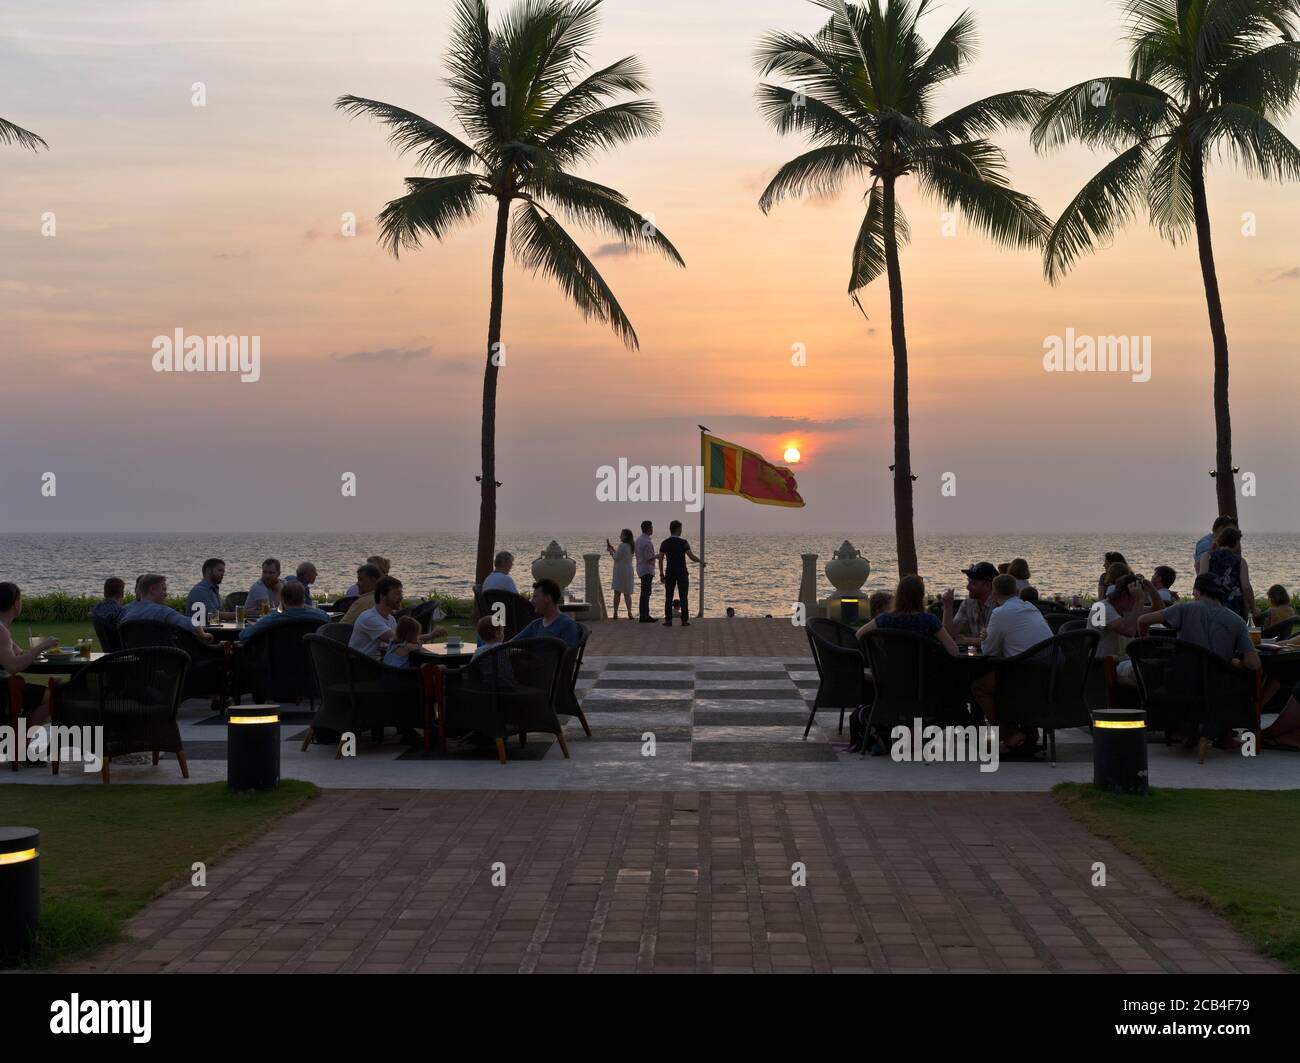 dh Galle face Hotel COLOMBO VILLE SRI LANKA Hôtels tables de cocktails en soirée regardant le soleil se coucher coucher coucher coucher coucher du soleil ciel Banque D'Images